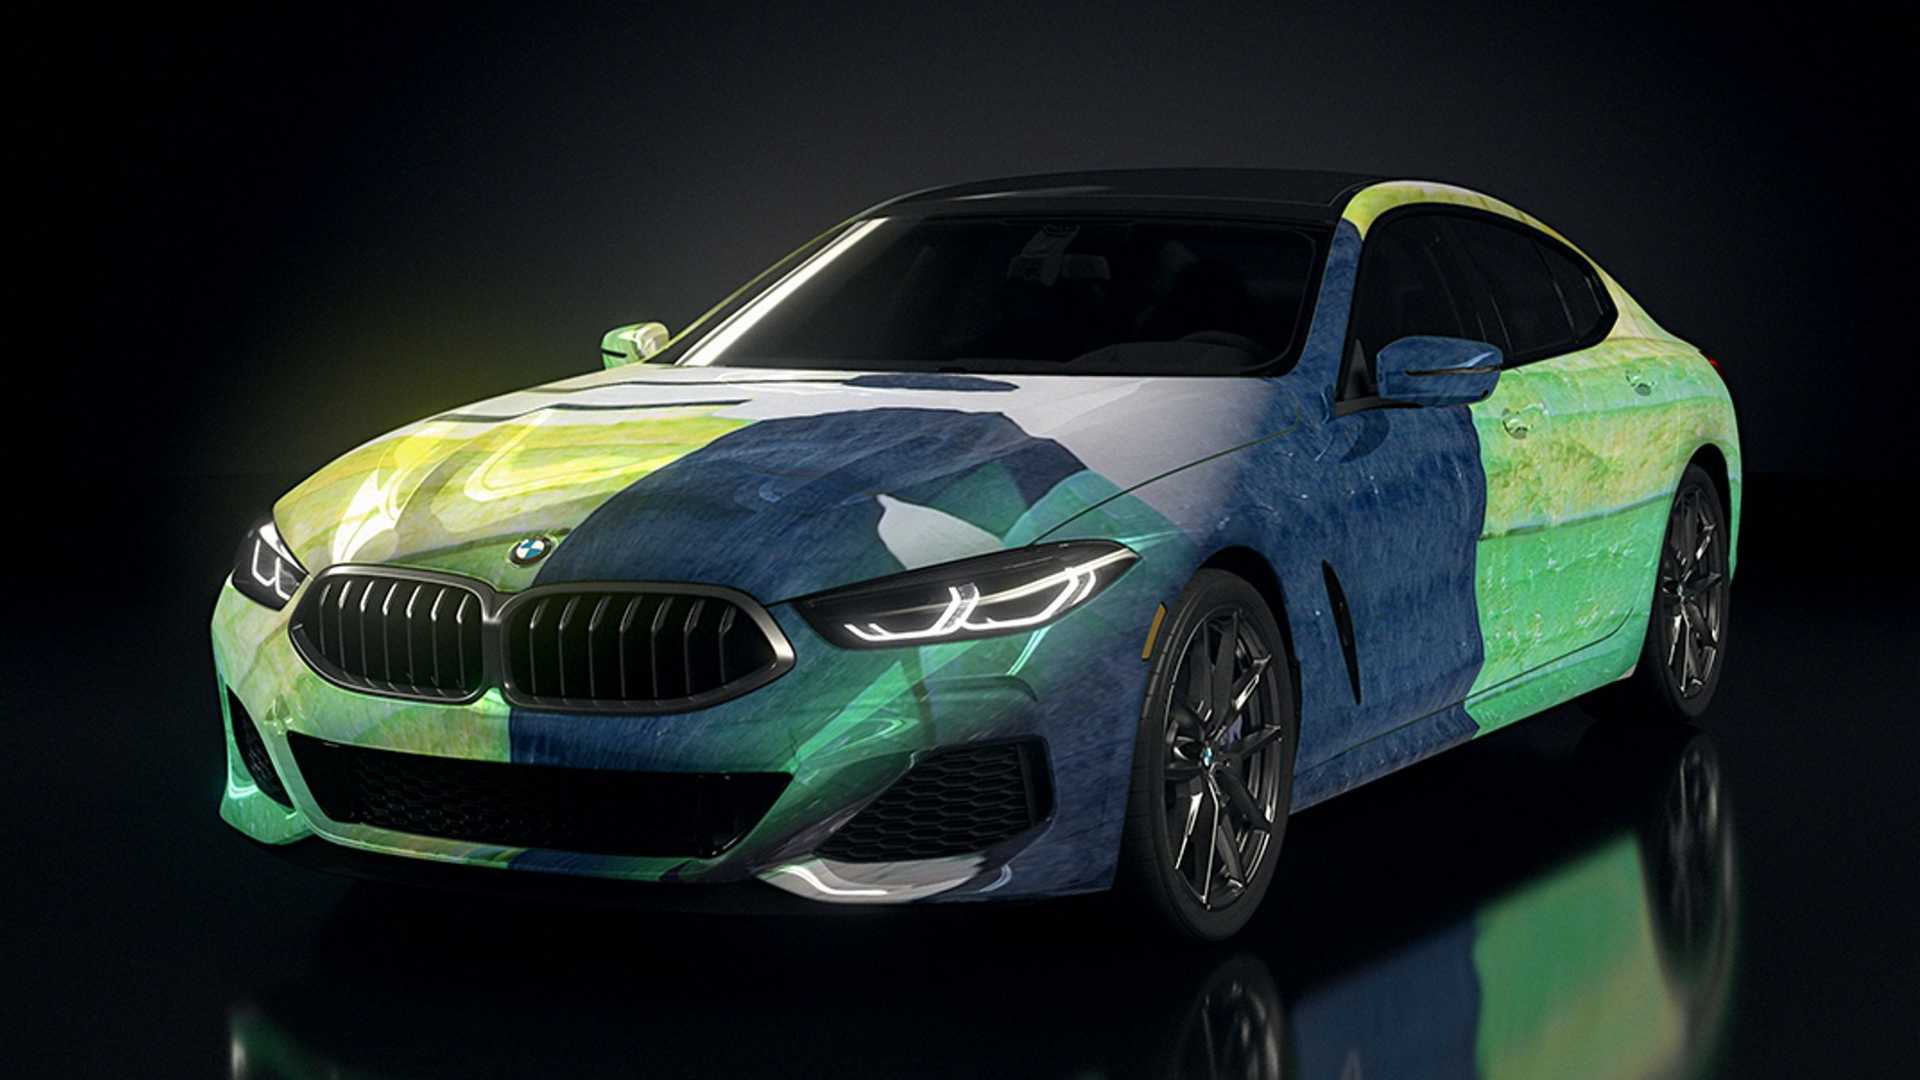 بی ام و سری 8 گرن کوپه / BMW 8 Series Gran Coupe رنگ سبز هوش مصنوعی